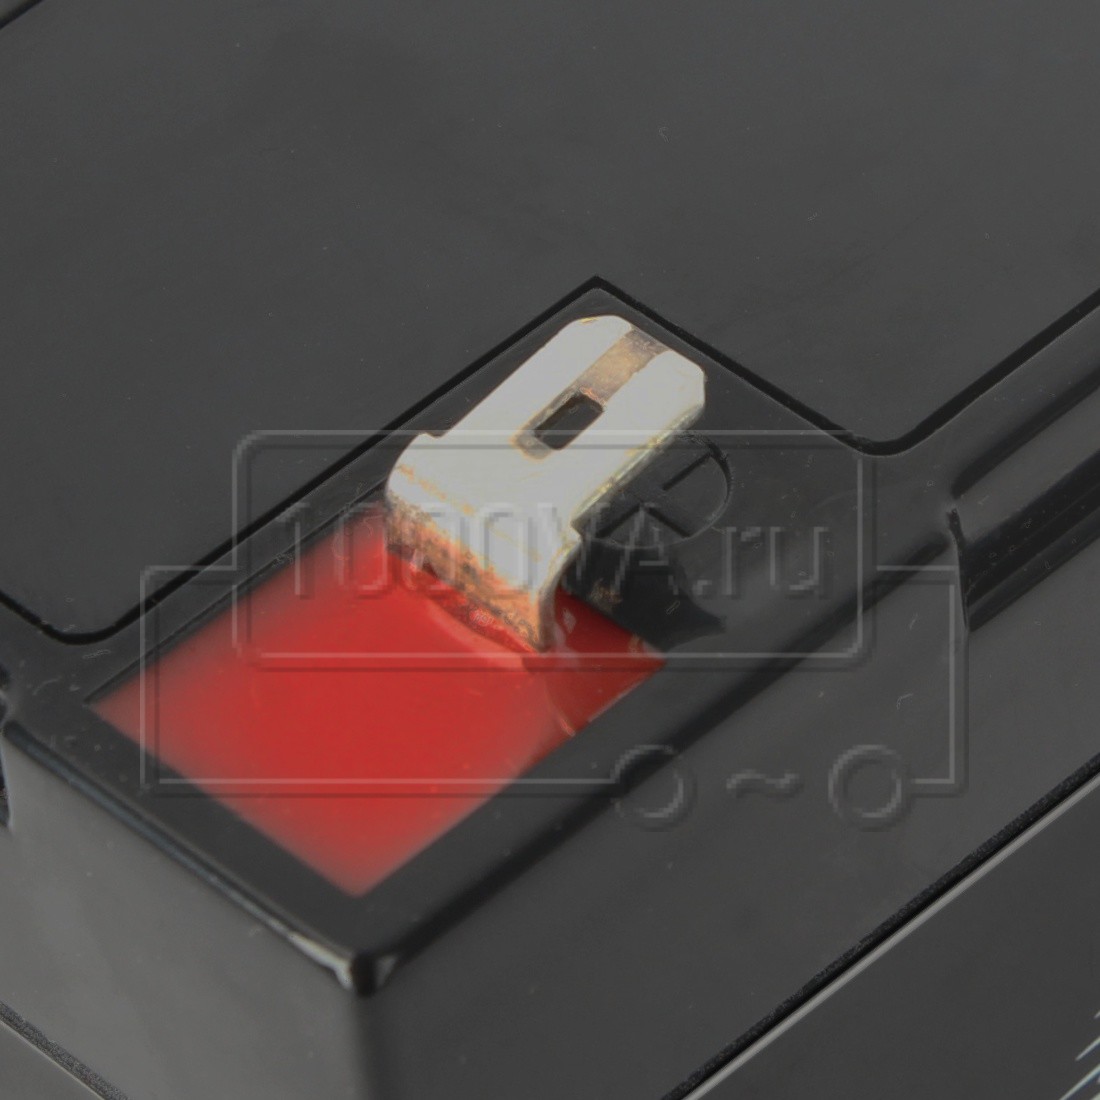 Аккумулятор Leoch DJW 6-12 (6В, 12Ач / 6V, 12 Ah / вывод Т2) — купить по  низкой цене на Яндекс Маркете